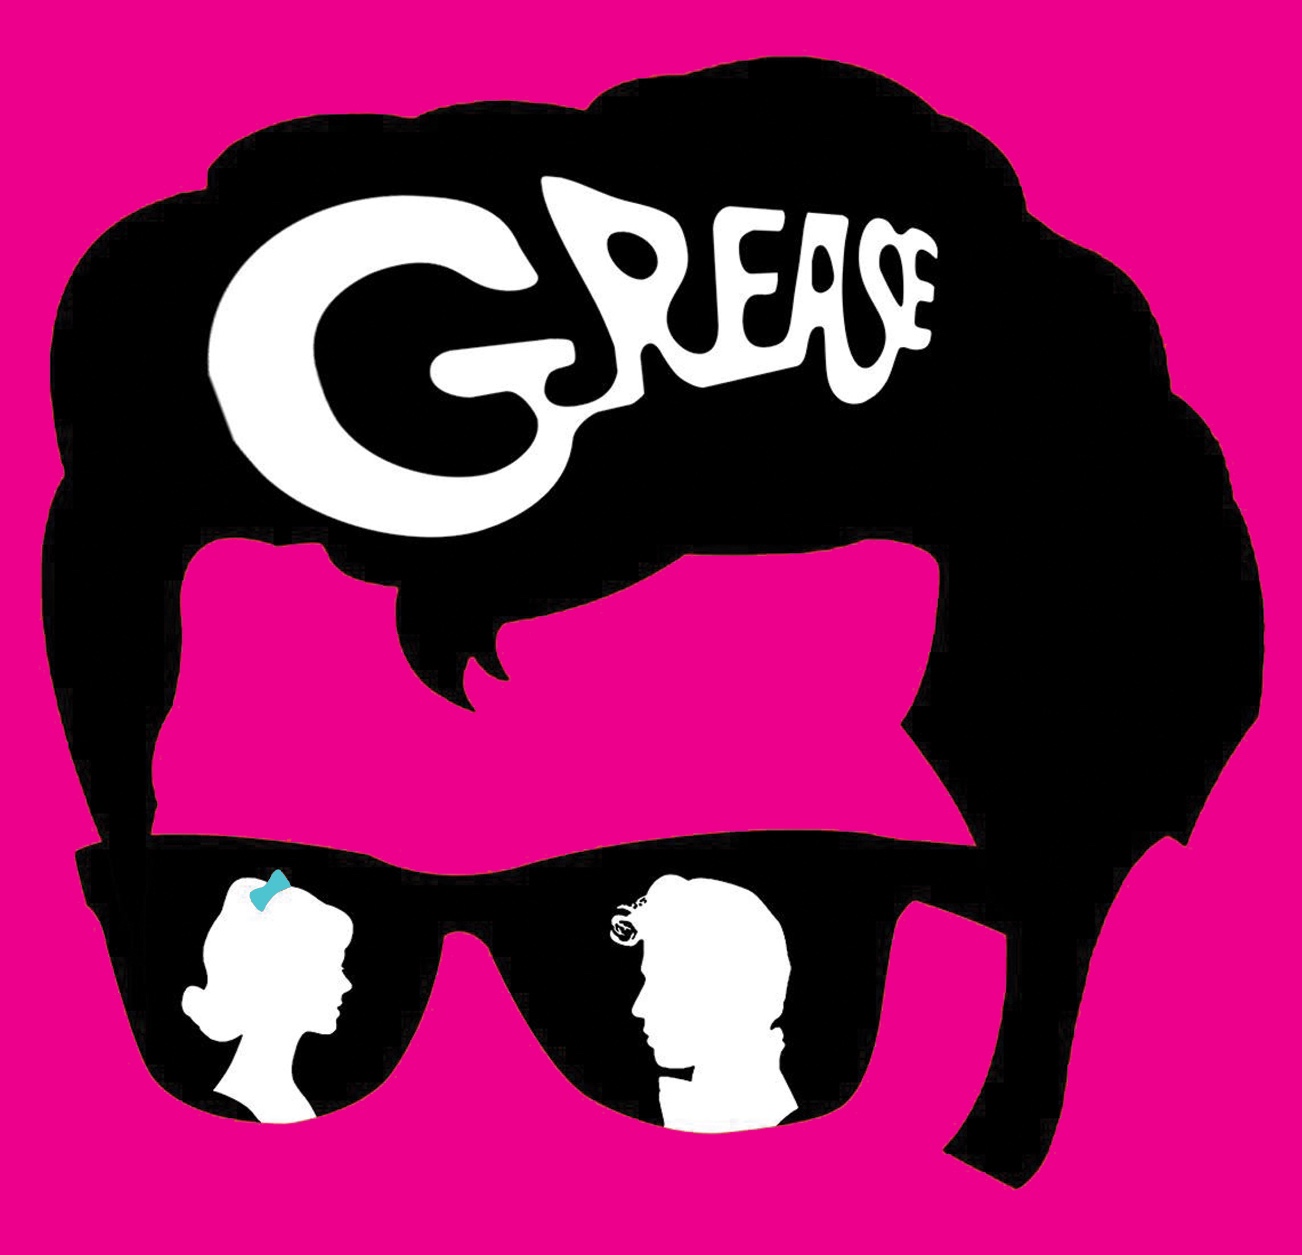 grease-by-bsg.jpg